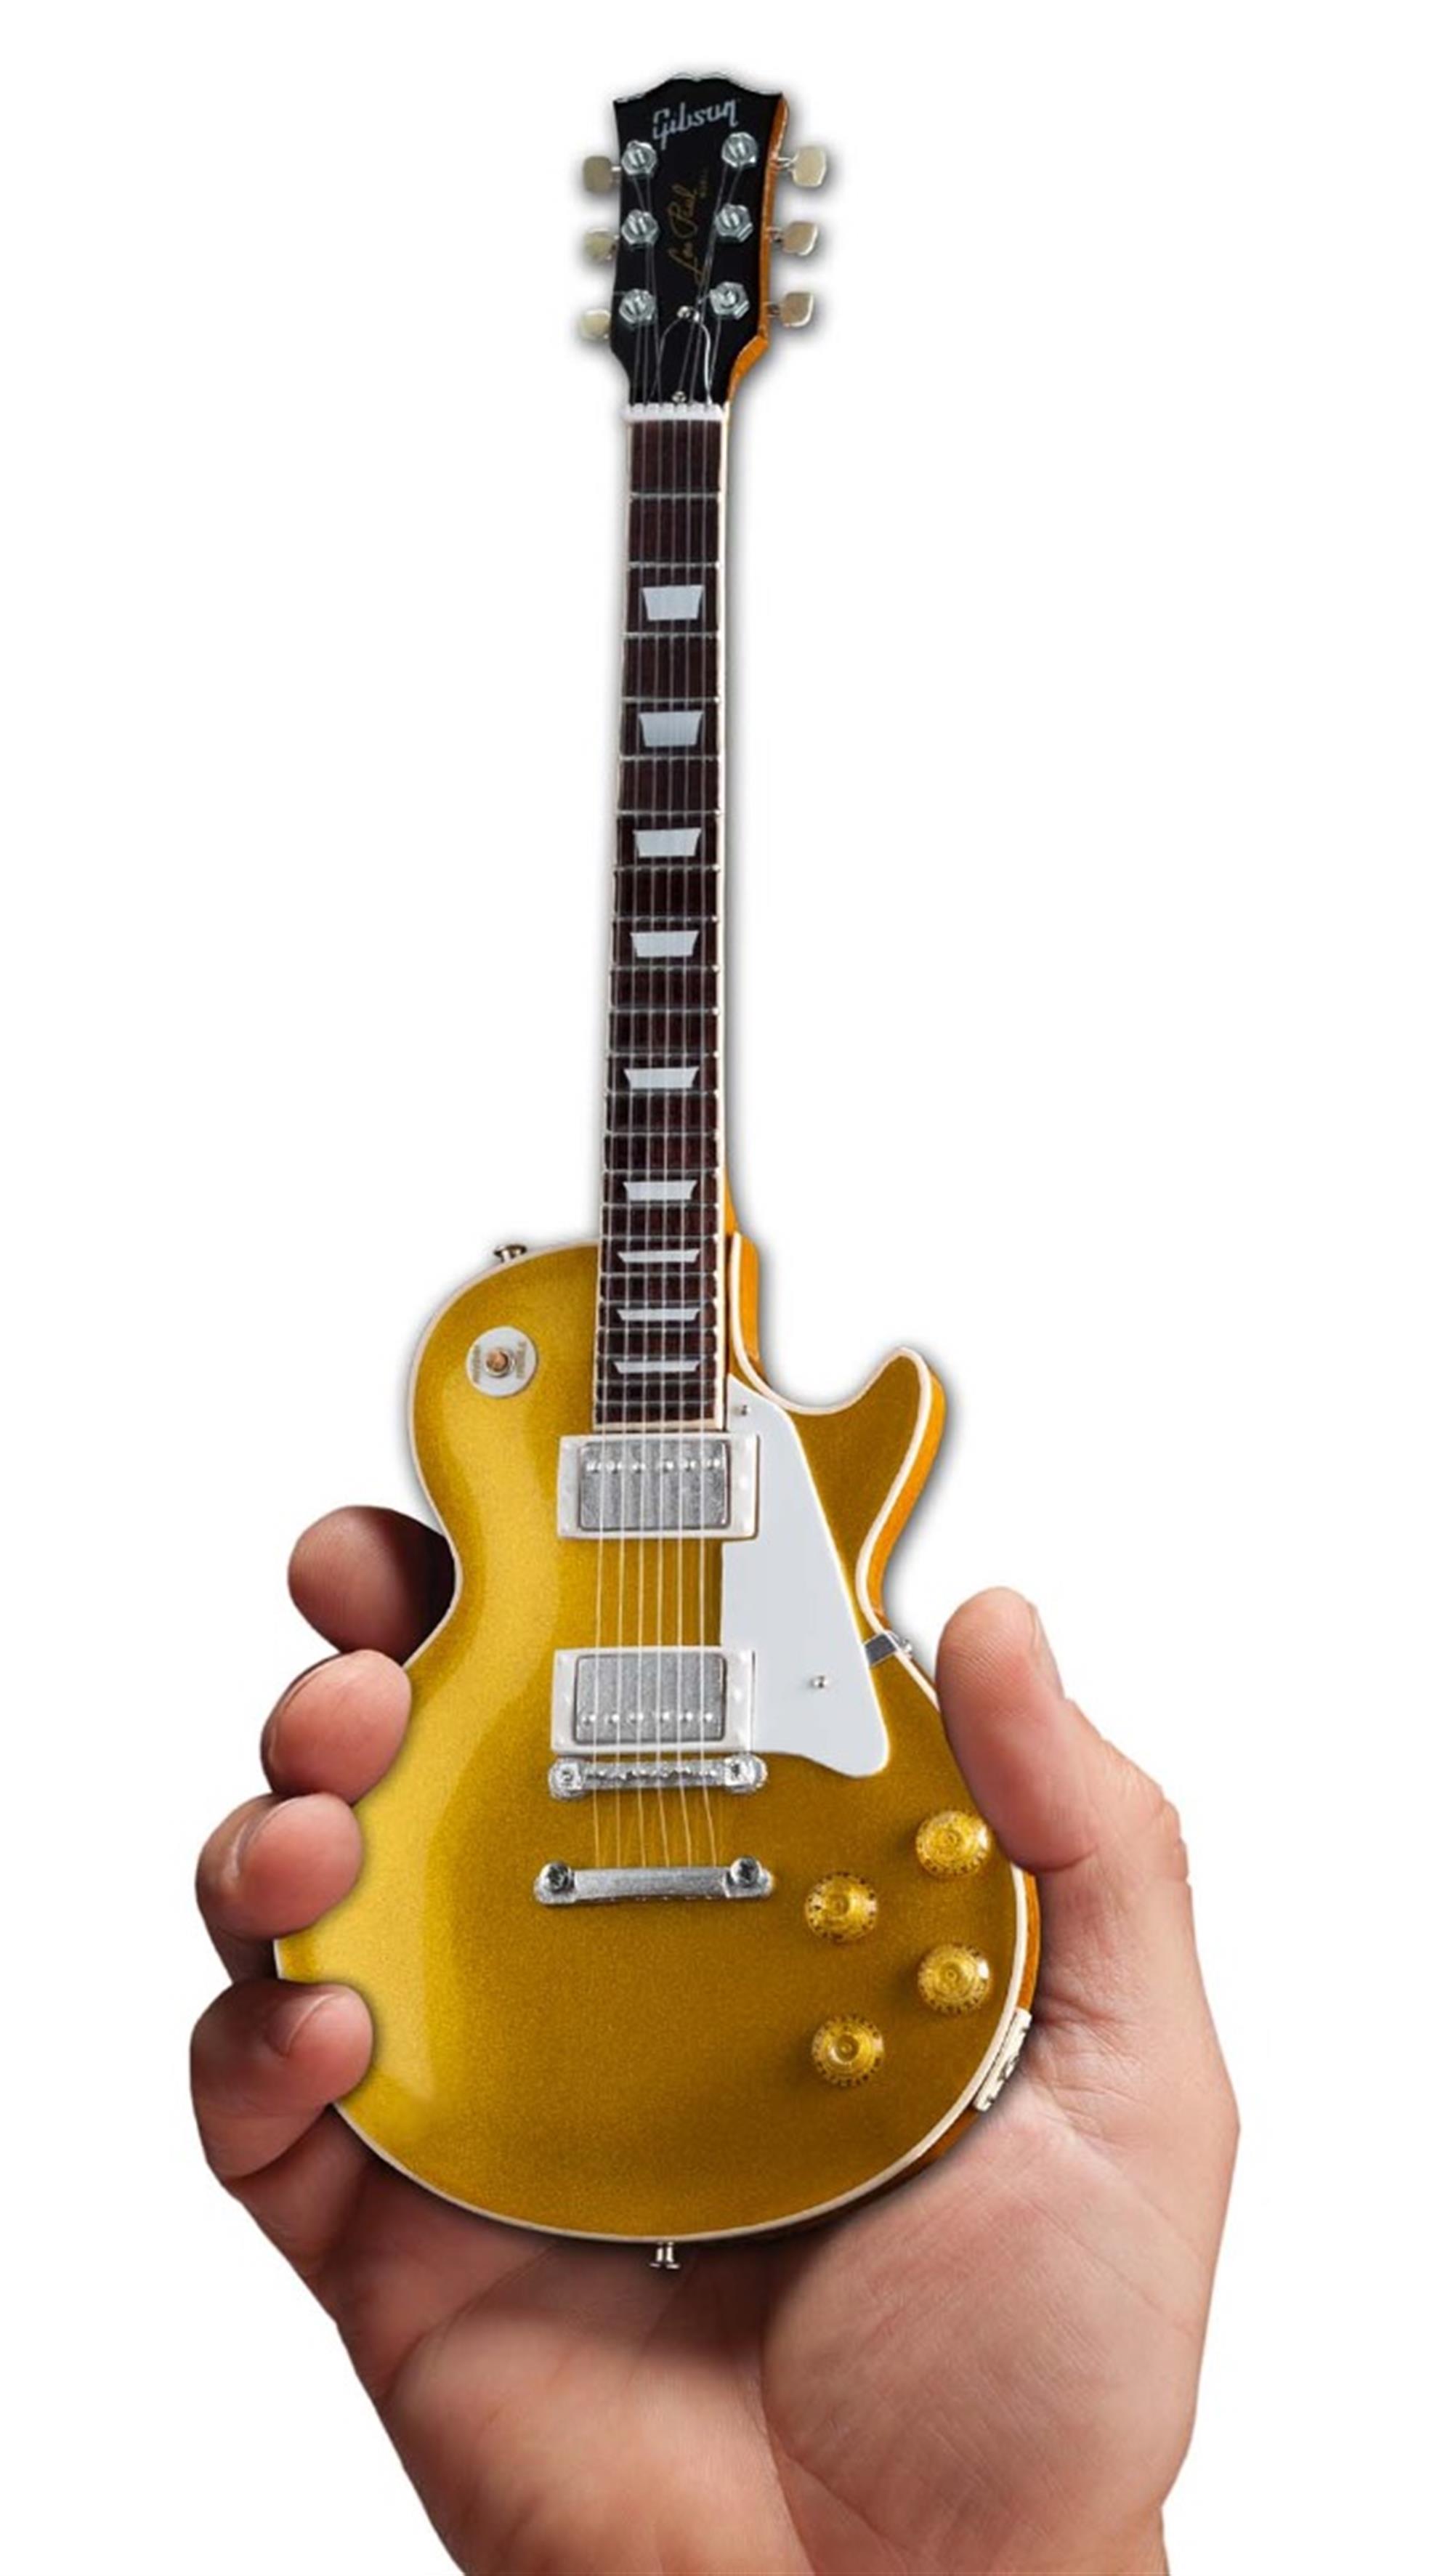 Axe Heaven Gibson 1957 Les Paul Standard Gold Top Mini Guitar Collectible